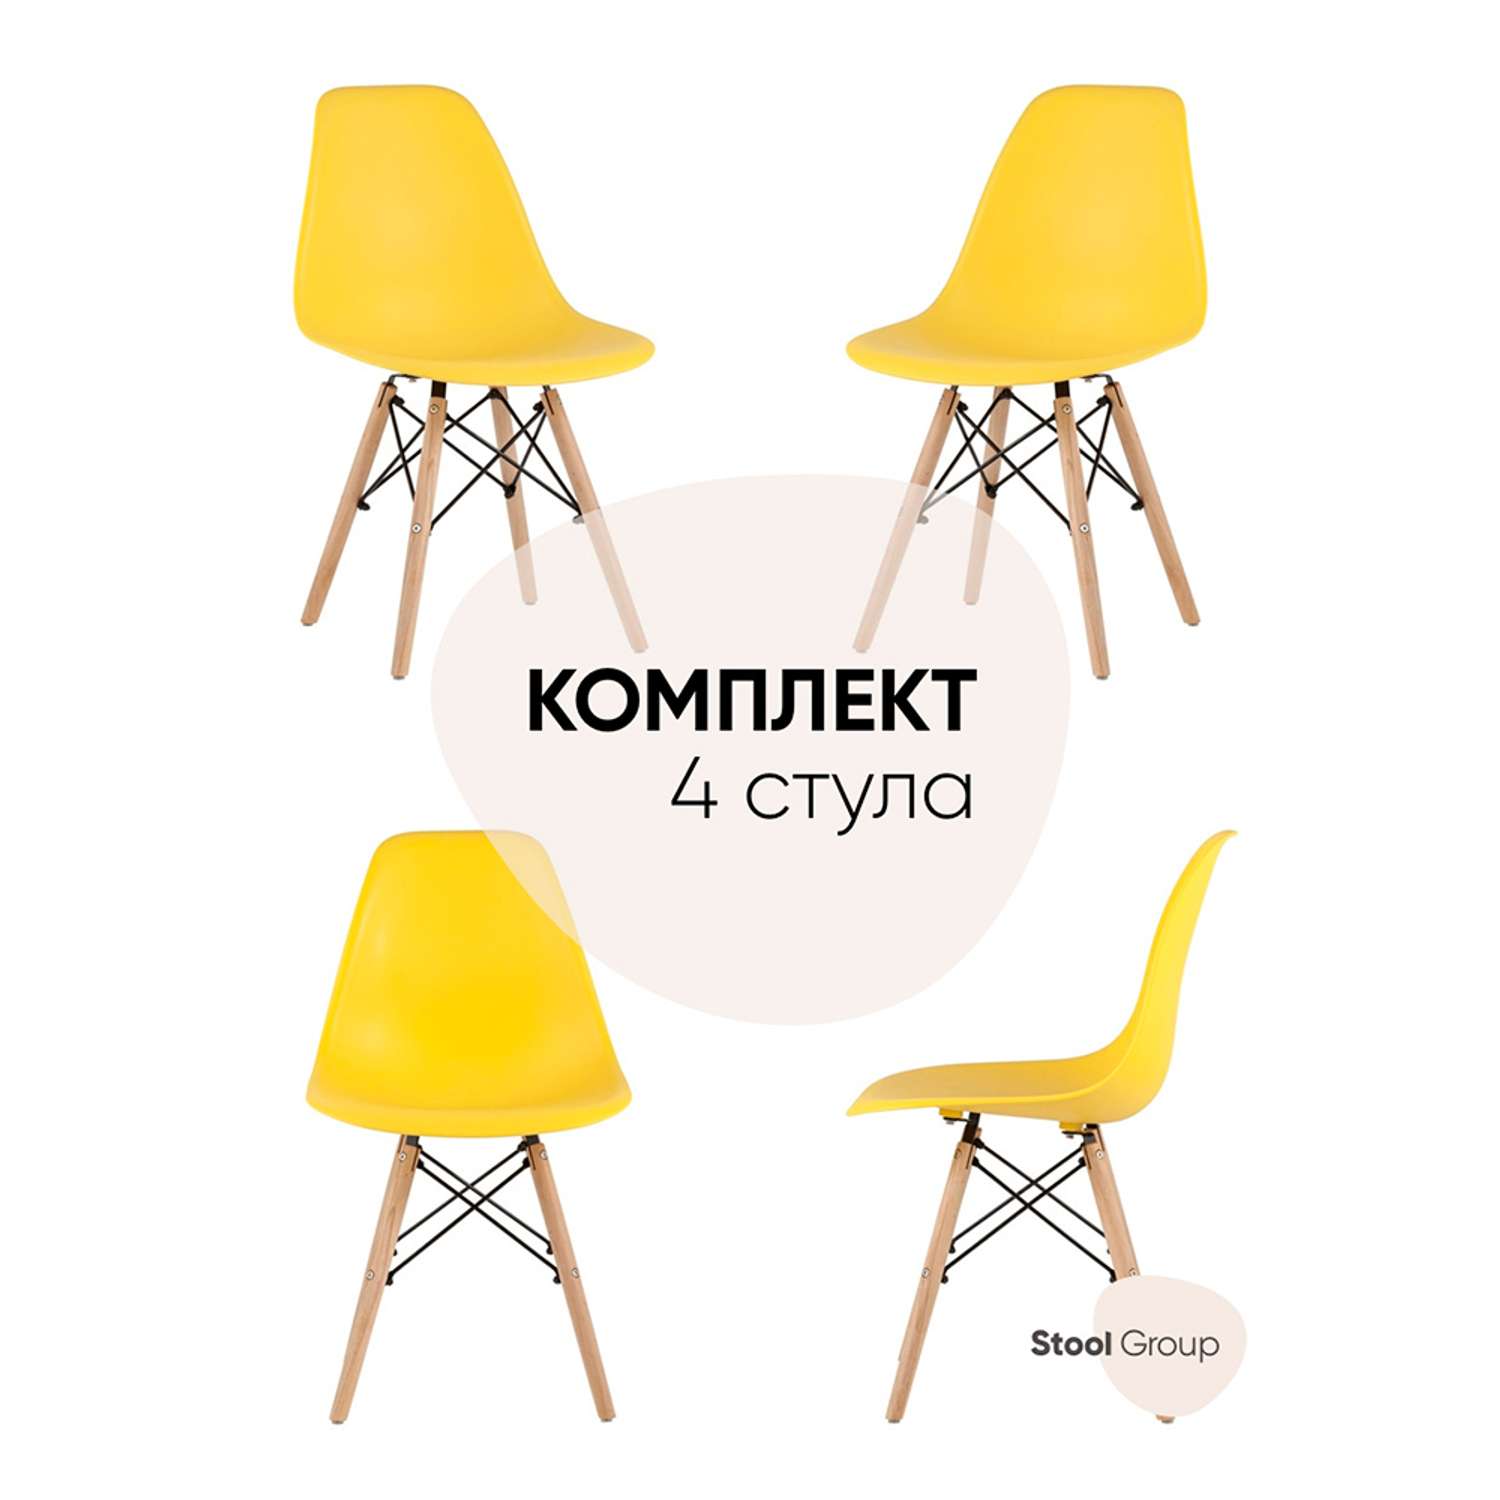 Комплект стульев Stool Group DSW Style желтый - фото 1